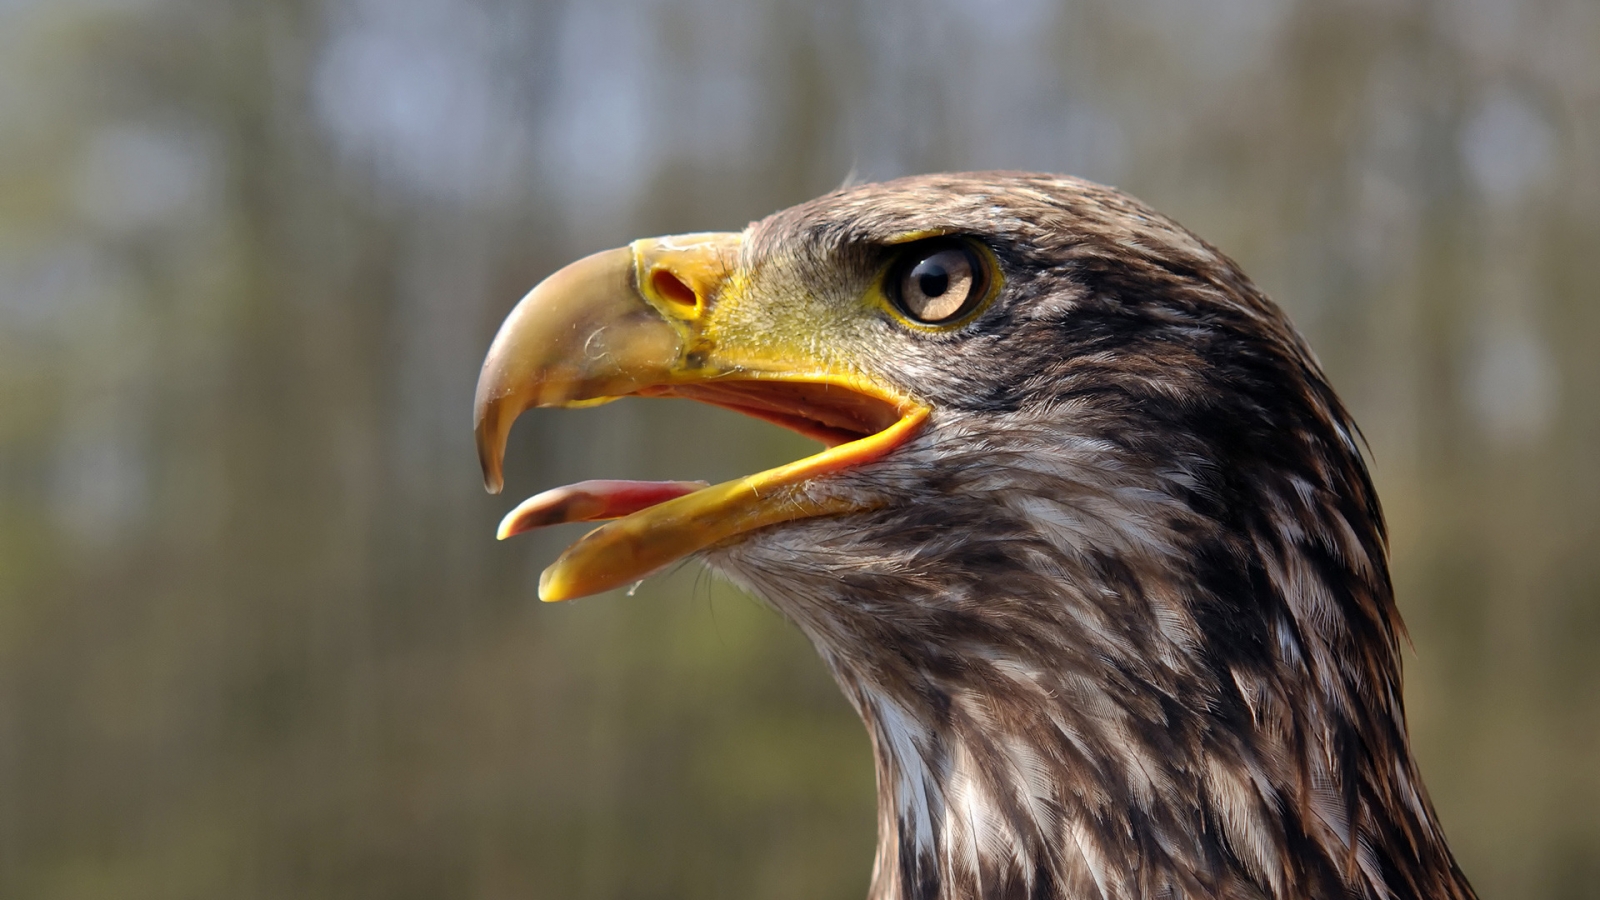 Juvenile Bald Eagle for 1600 x 900 HDTV resolution